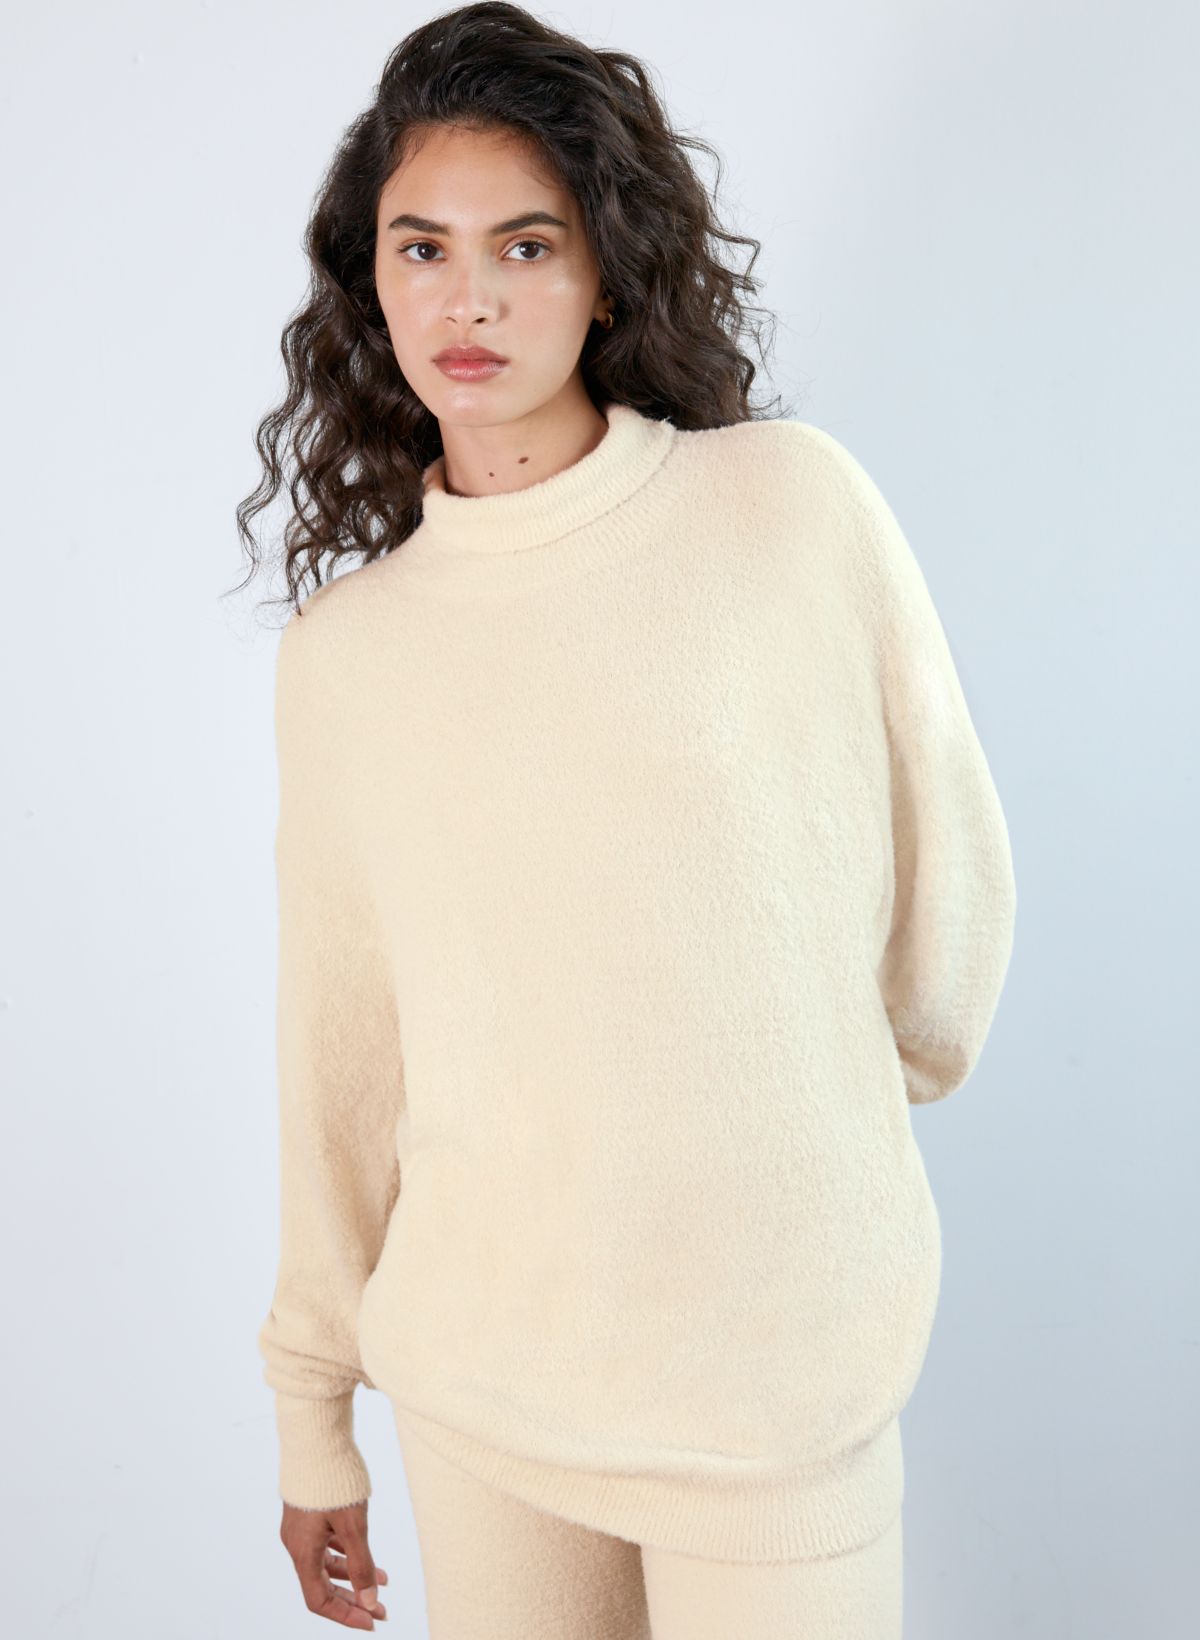 Dreamy Wool' Cuddle Soft Chunky Yarn